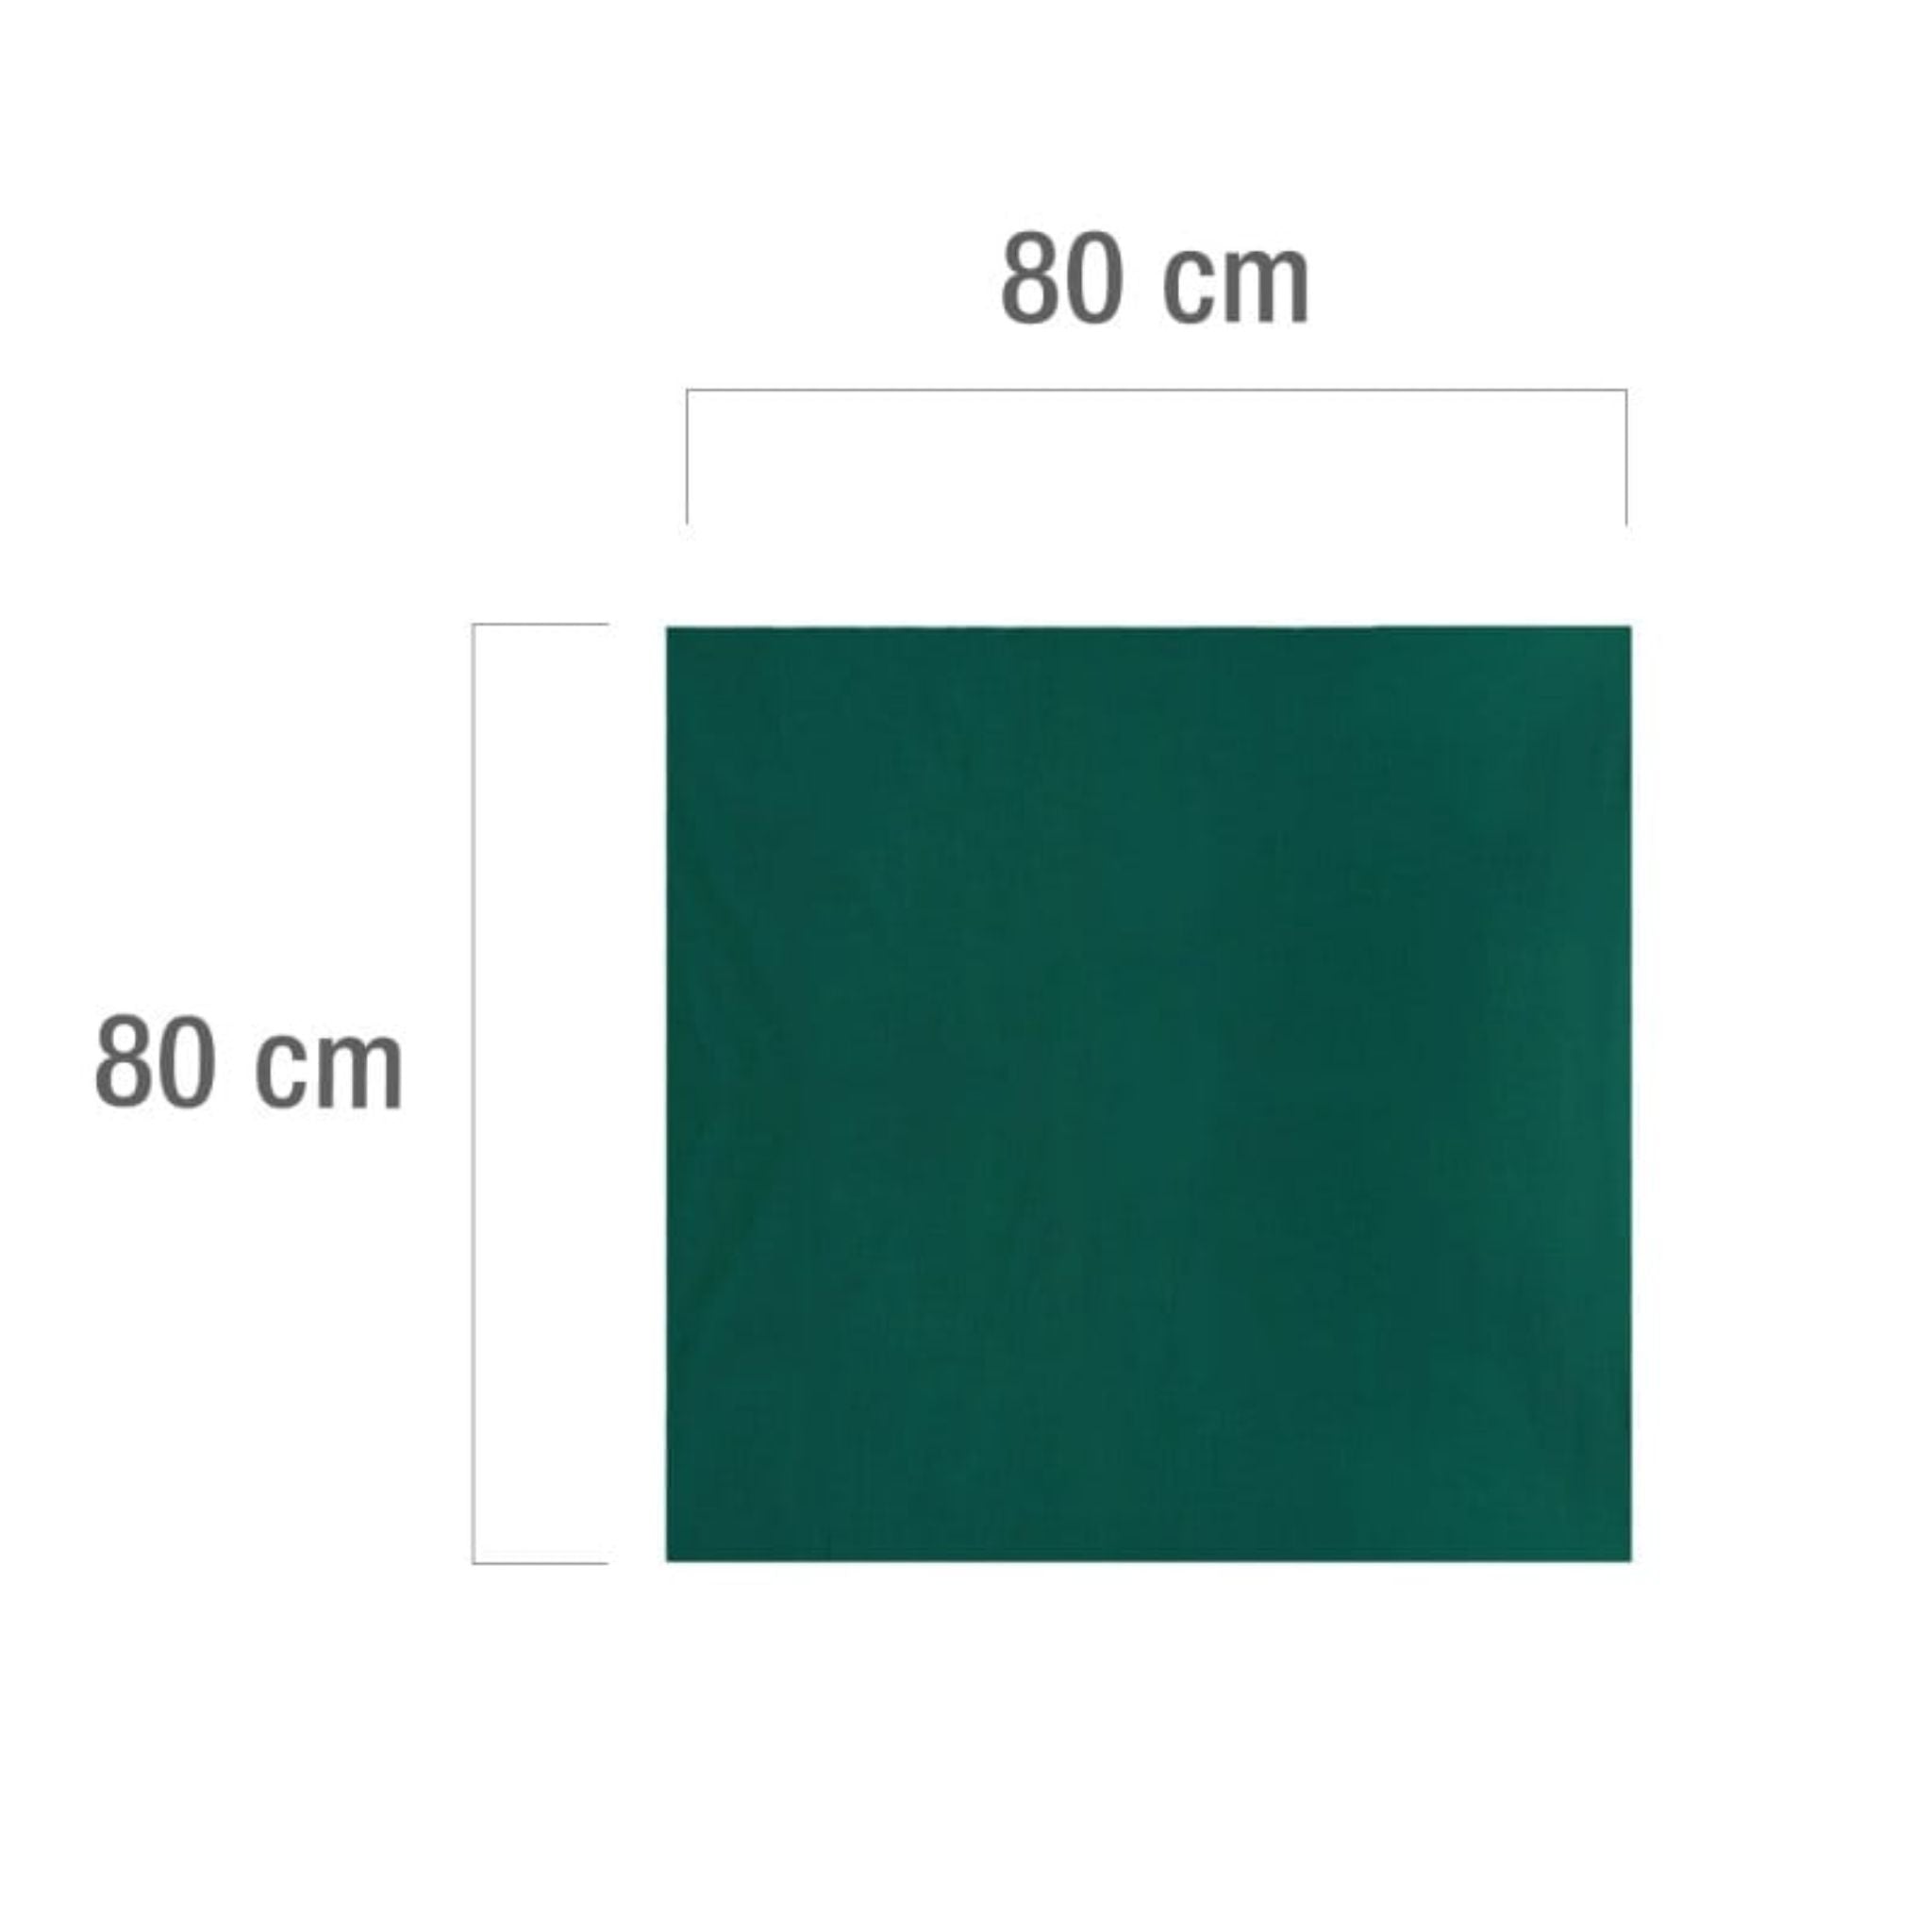 Reusable surgical drape green - 0